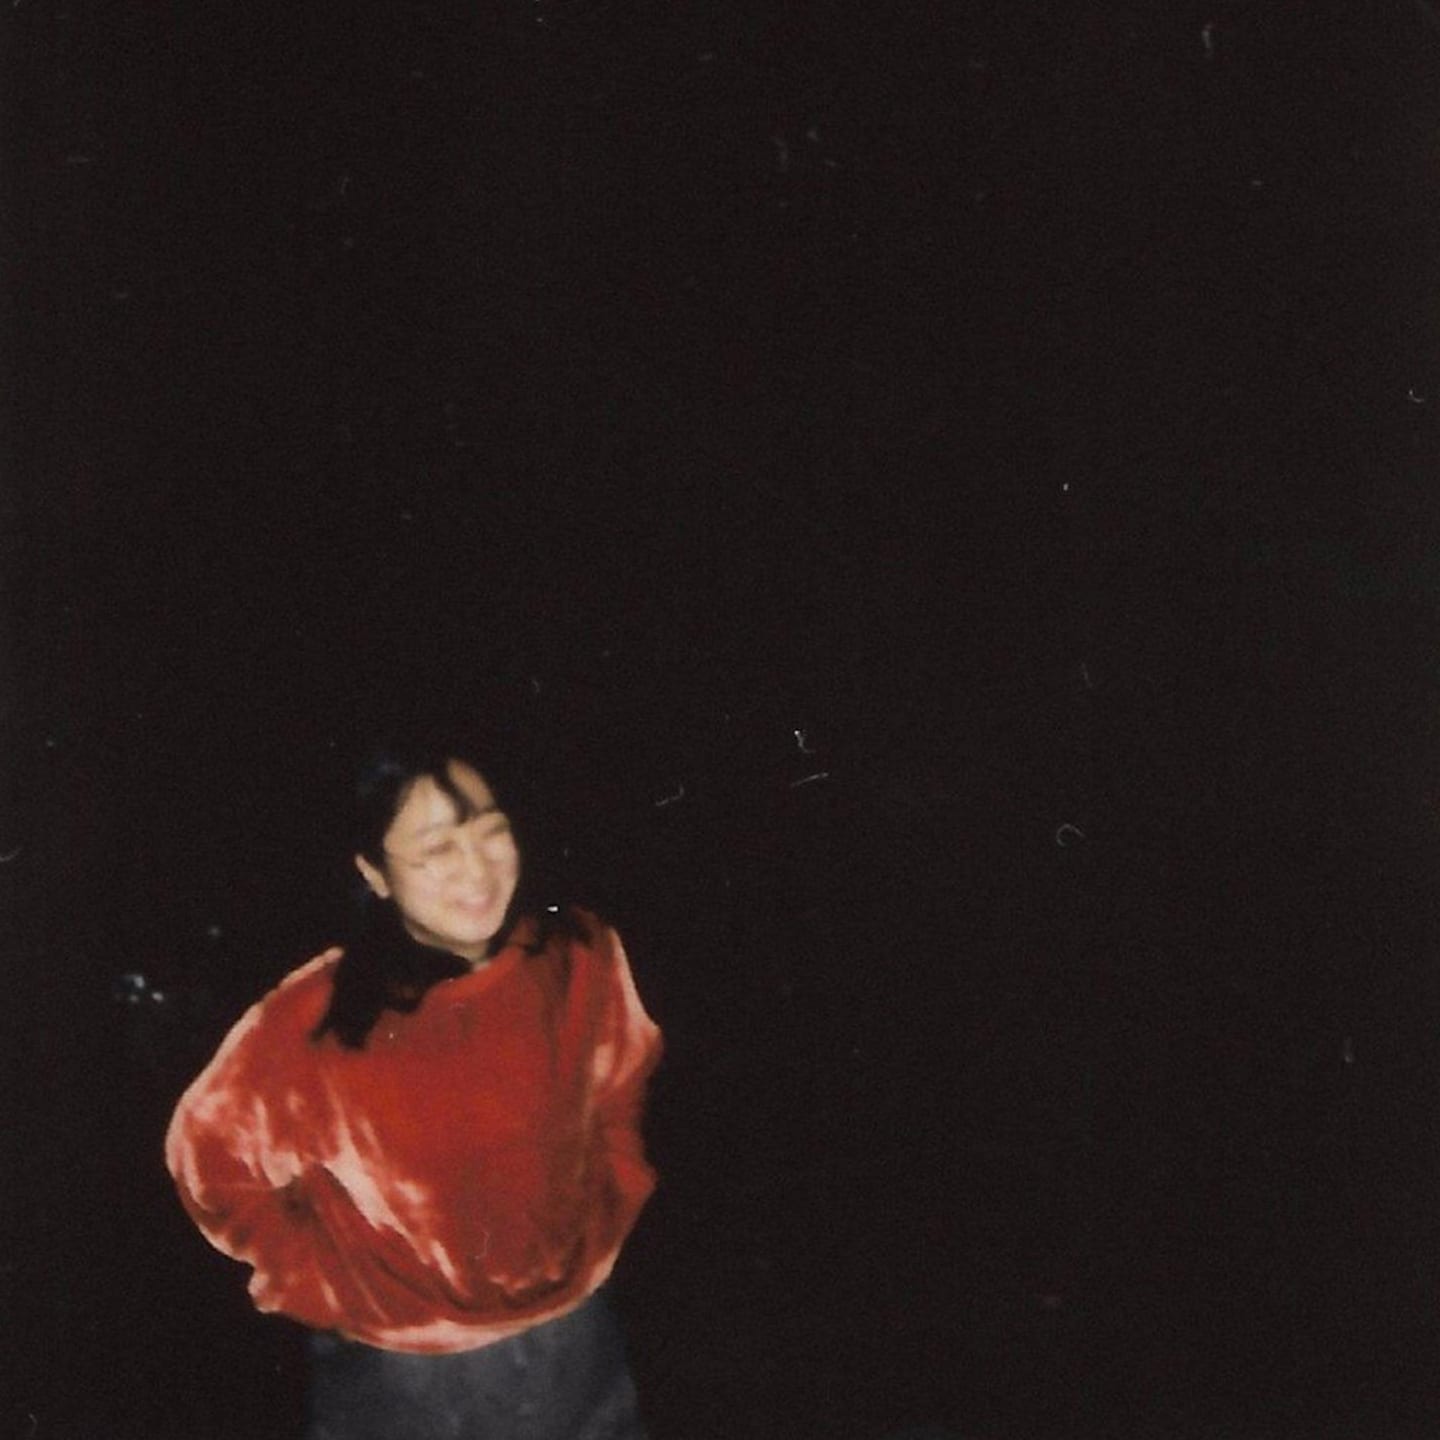 Yaeji Artist Profile Blurry image of a woman wearing a red velvety-like sweater